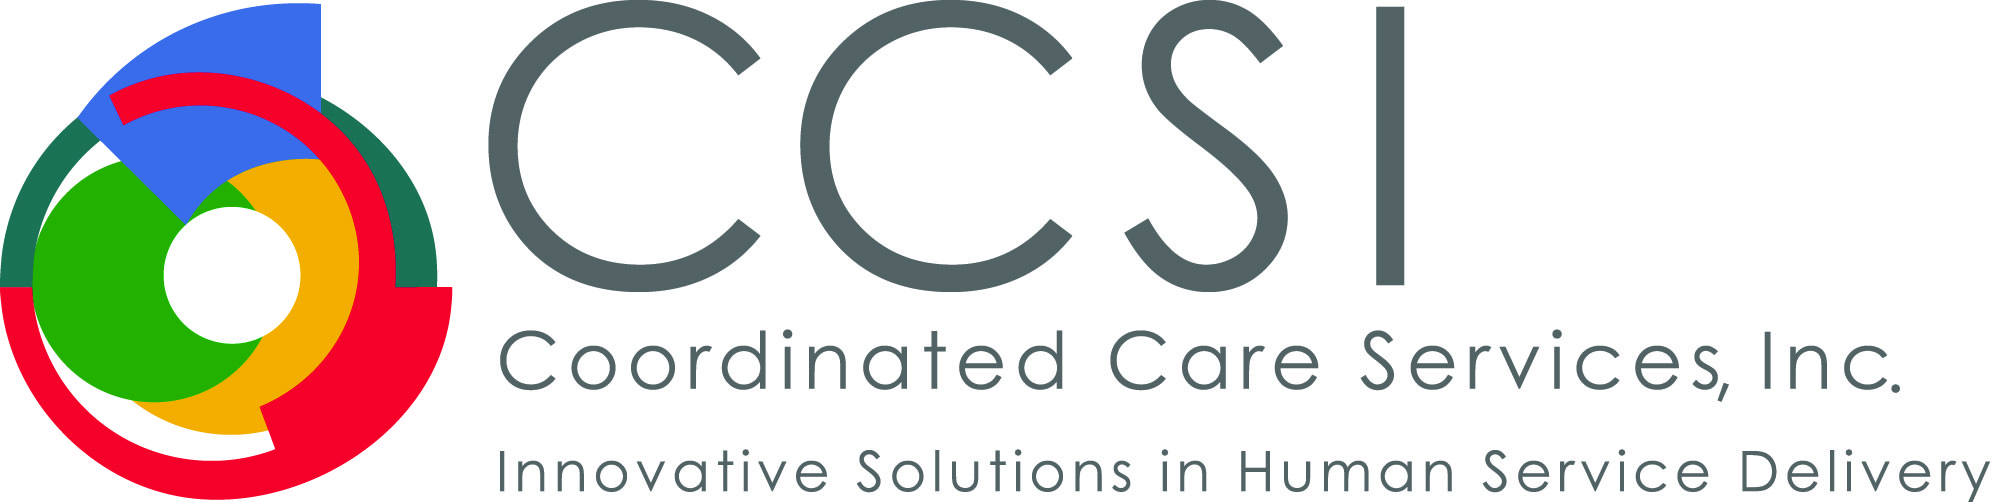 Coordinated Care Services Inc. (CCSI). 